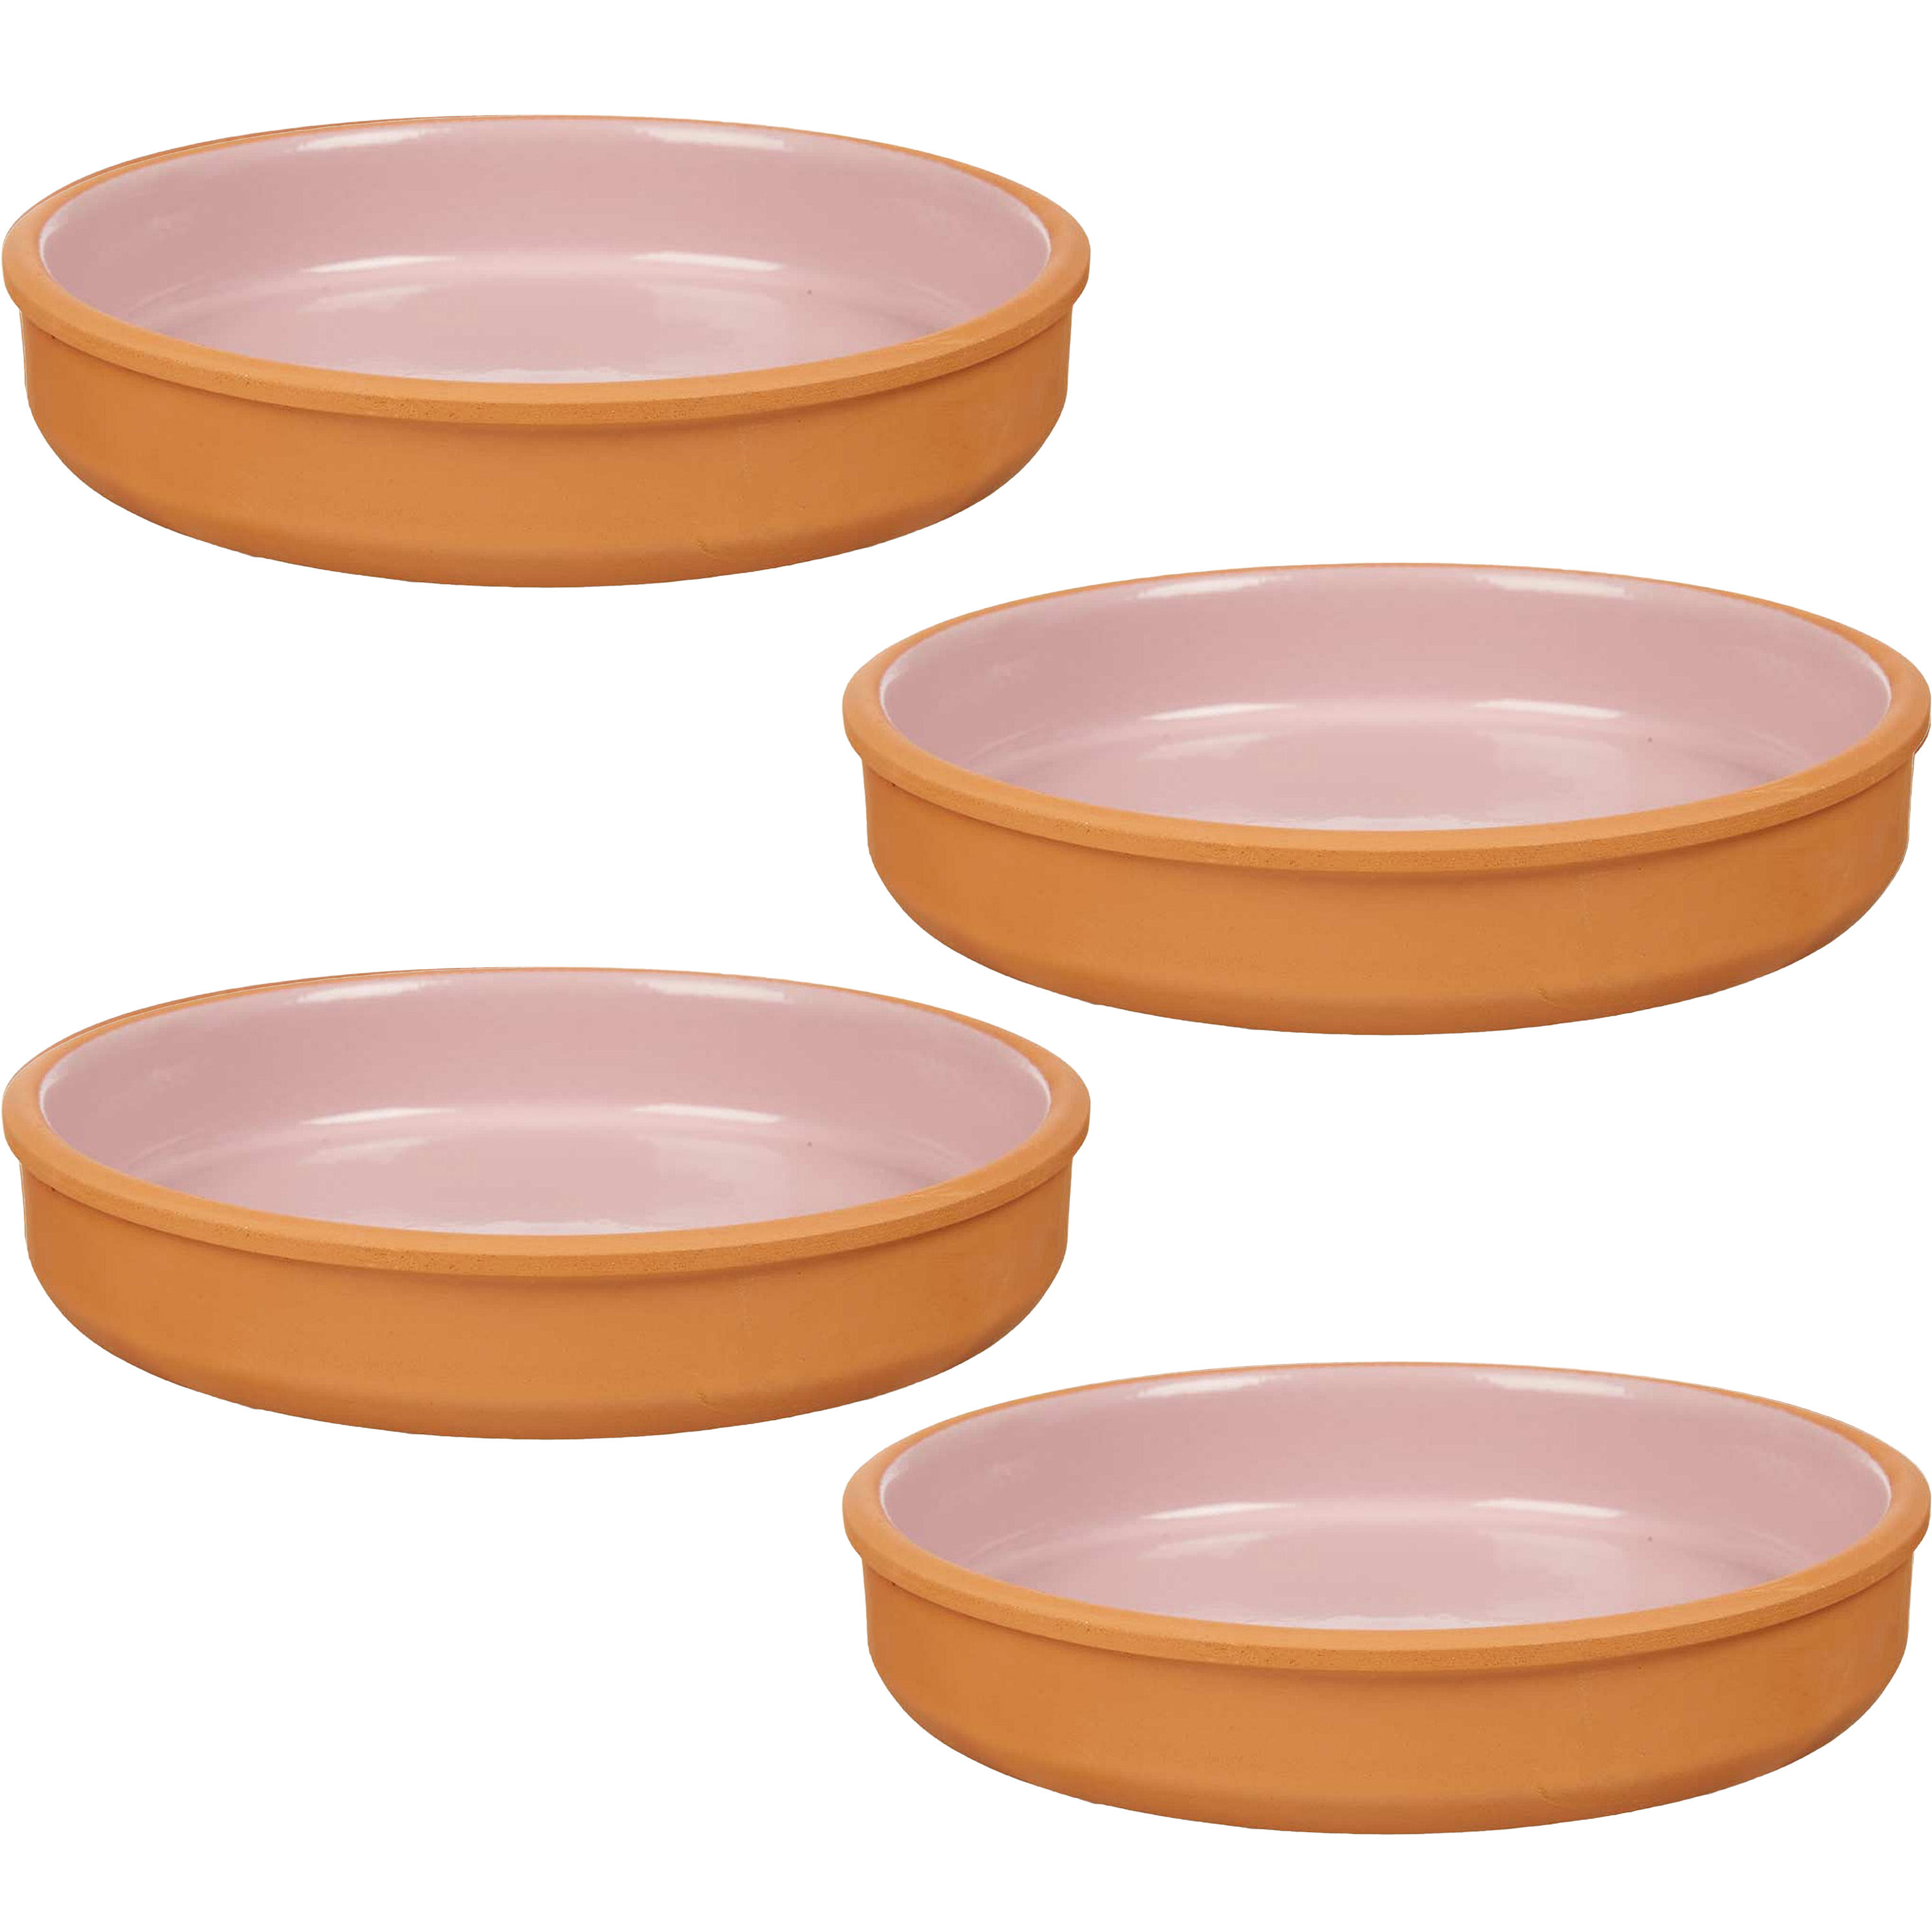 4x stuks tapas-hapjes serveren-oven schaal terracotta-roze 23 x 4 cm